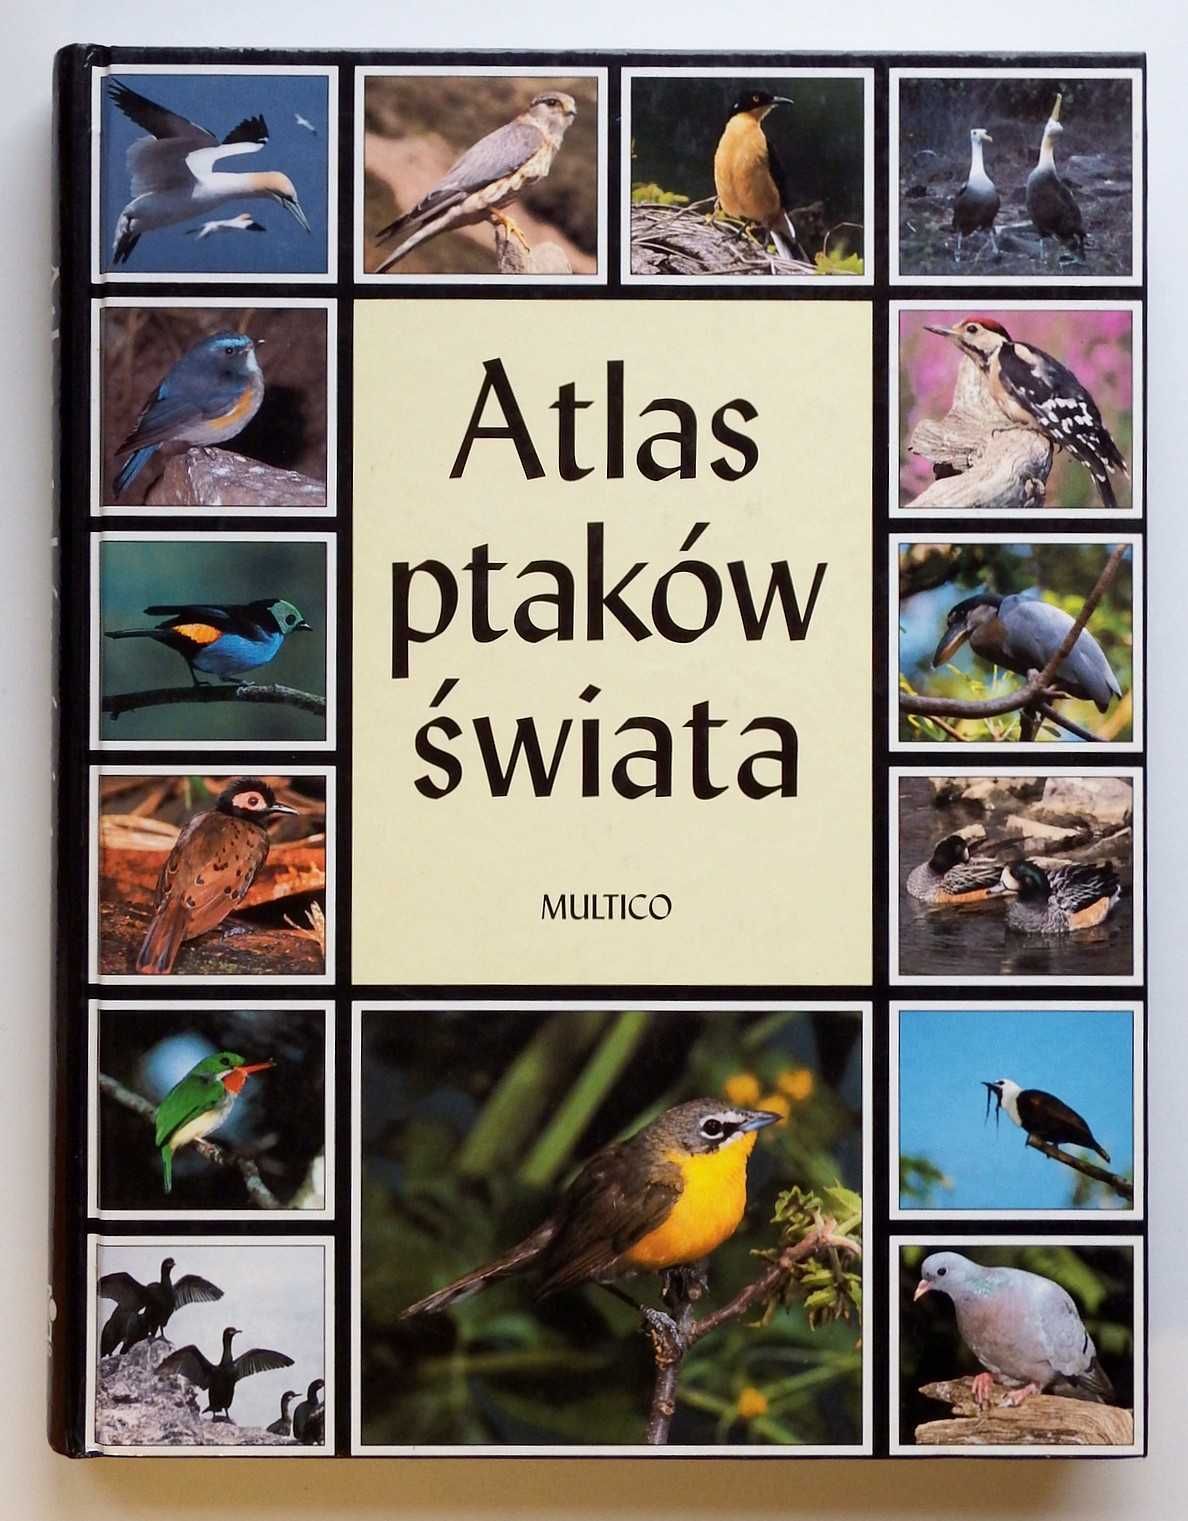 Dudziński W., Keller M. (przek) - "Atlas ptaków świata"